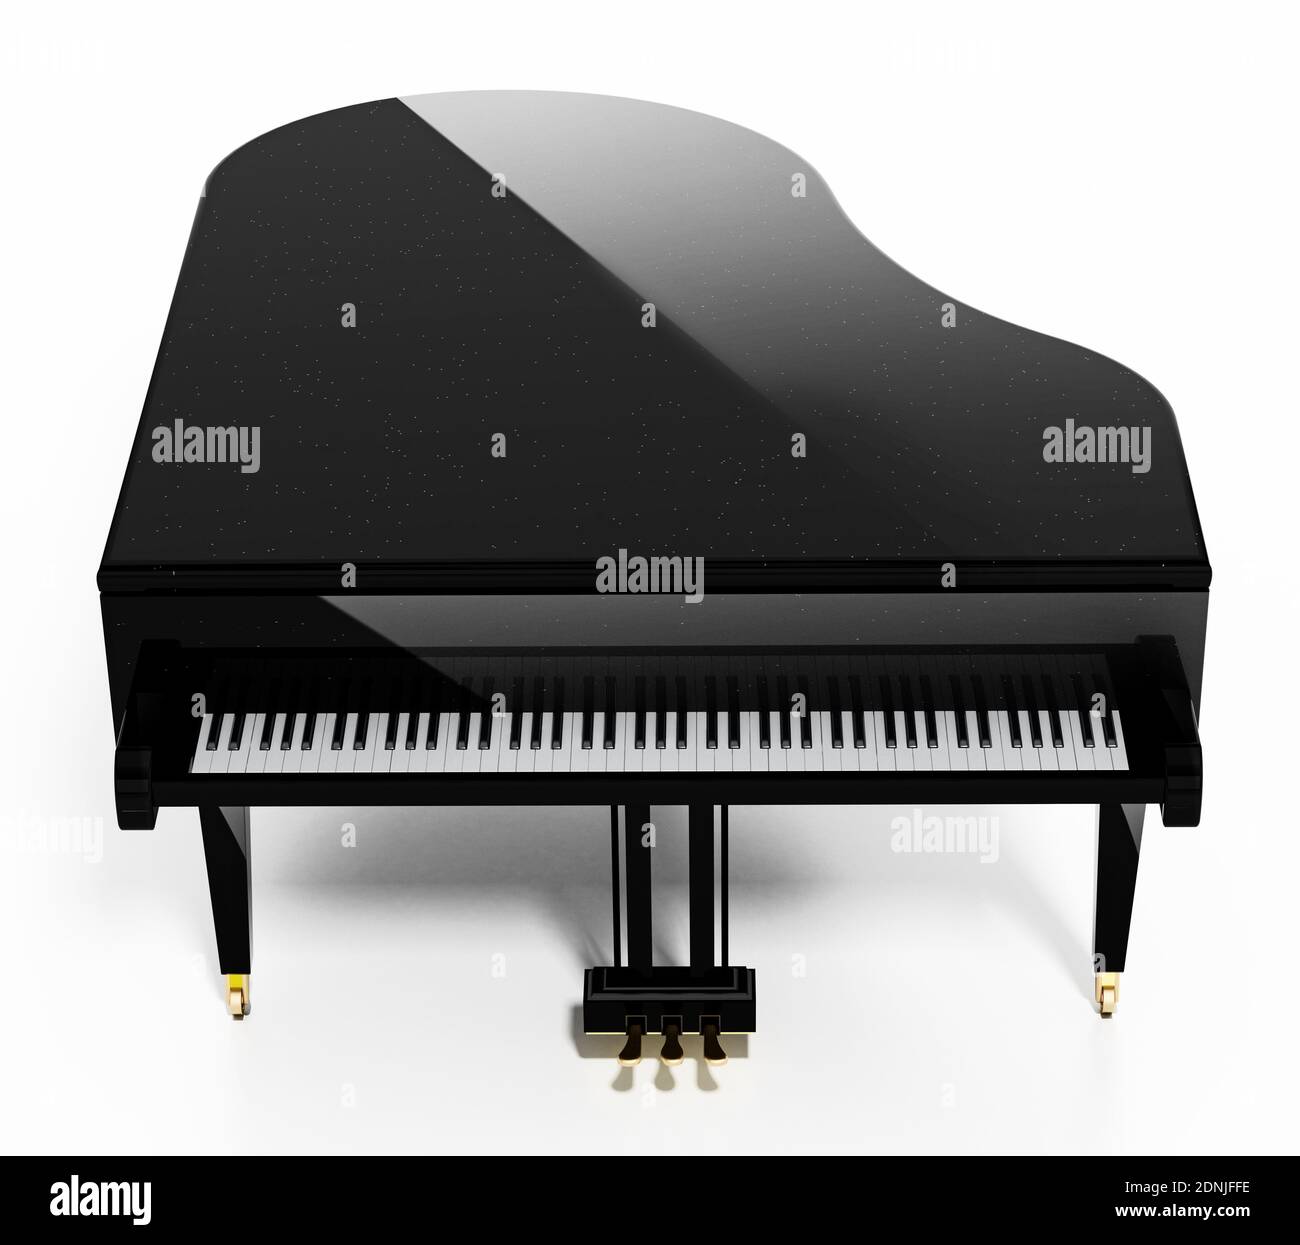 Piano à queue générique isolé sur fond blanc. Illustration 3D. Illustration 3D. Banque D'Images